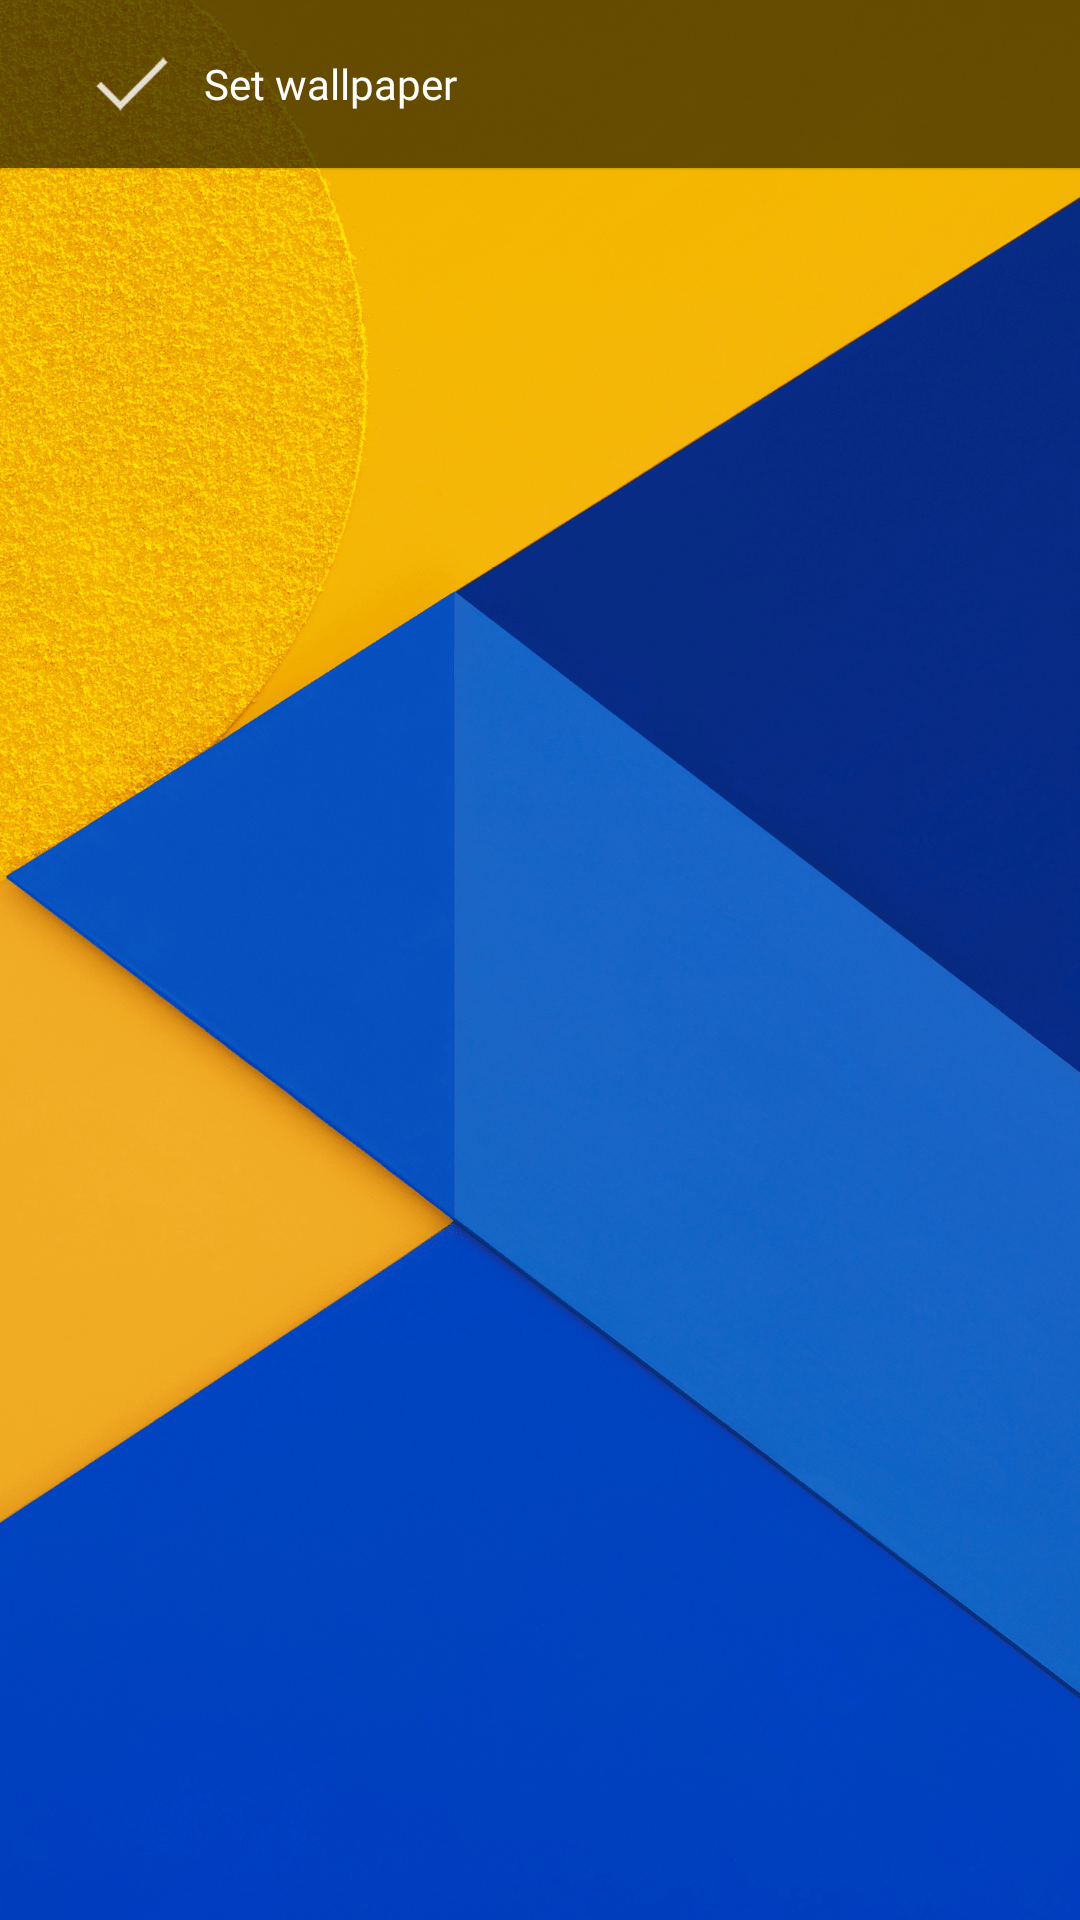 launcher wallpaper hd,blau,orange,kobaltblau,gelb,elektrisches blau